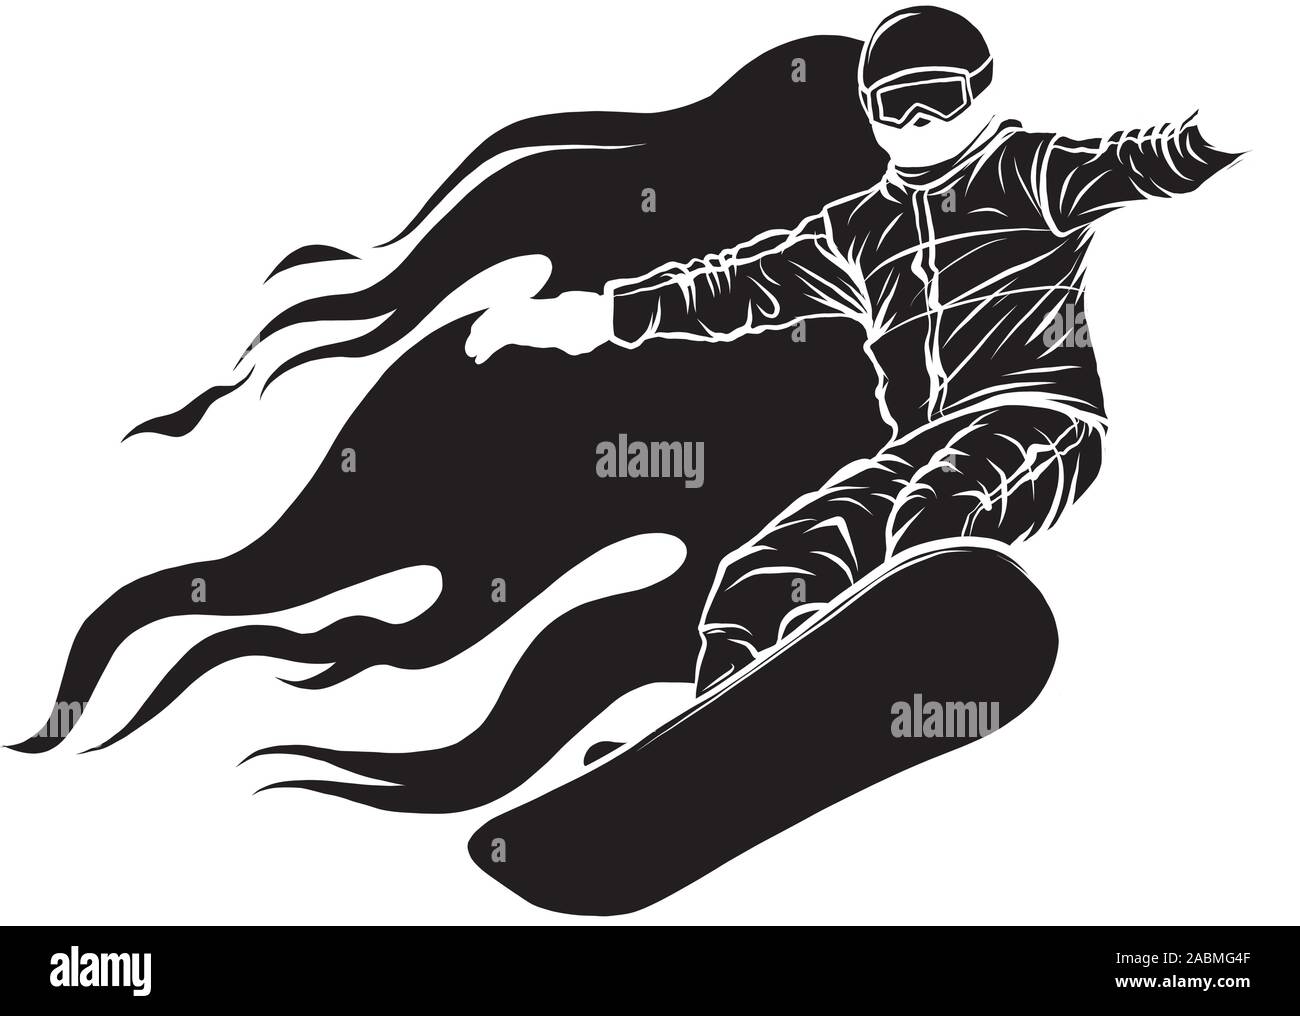 Snowboarder crow sul fuoco illustrazione vettoriale arte Illustrazione Vettoriale